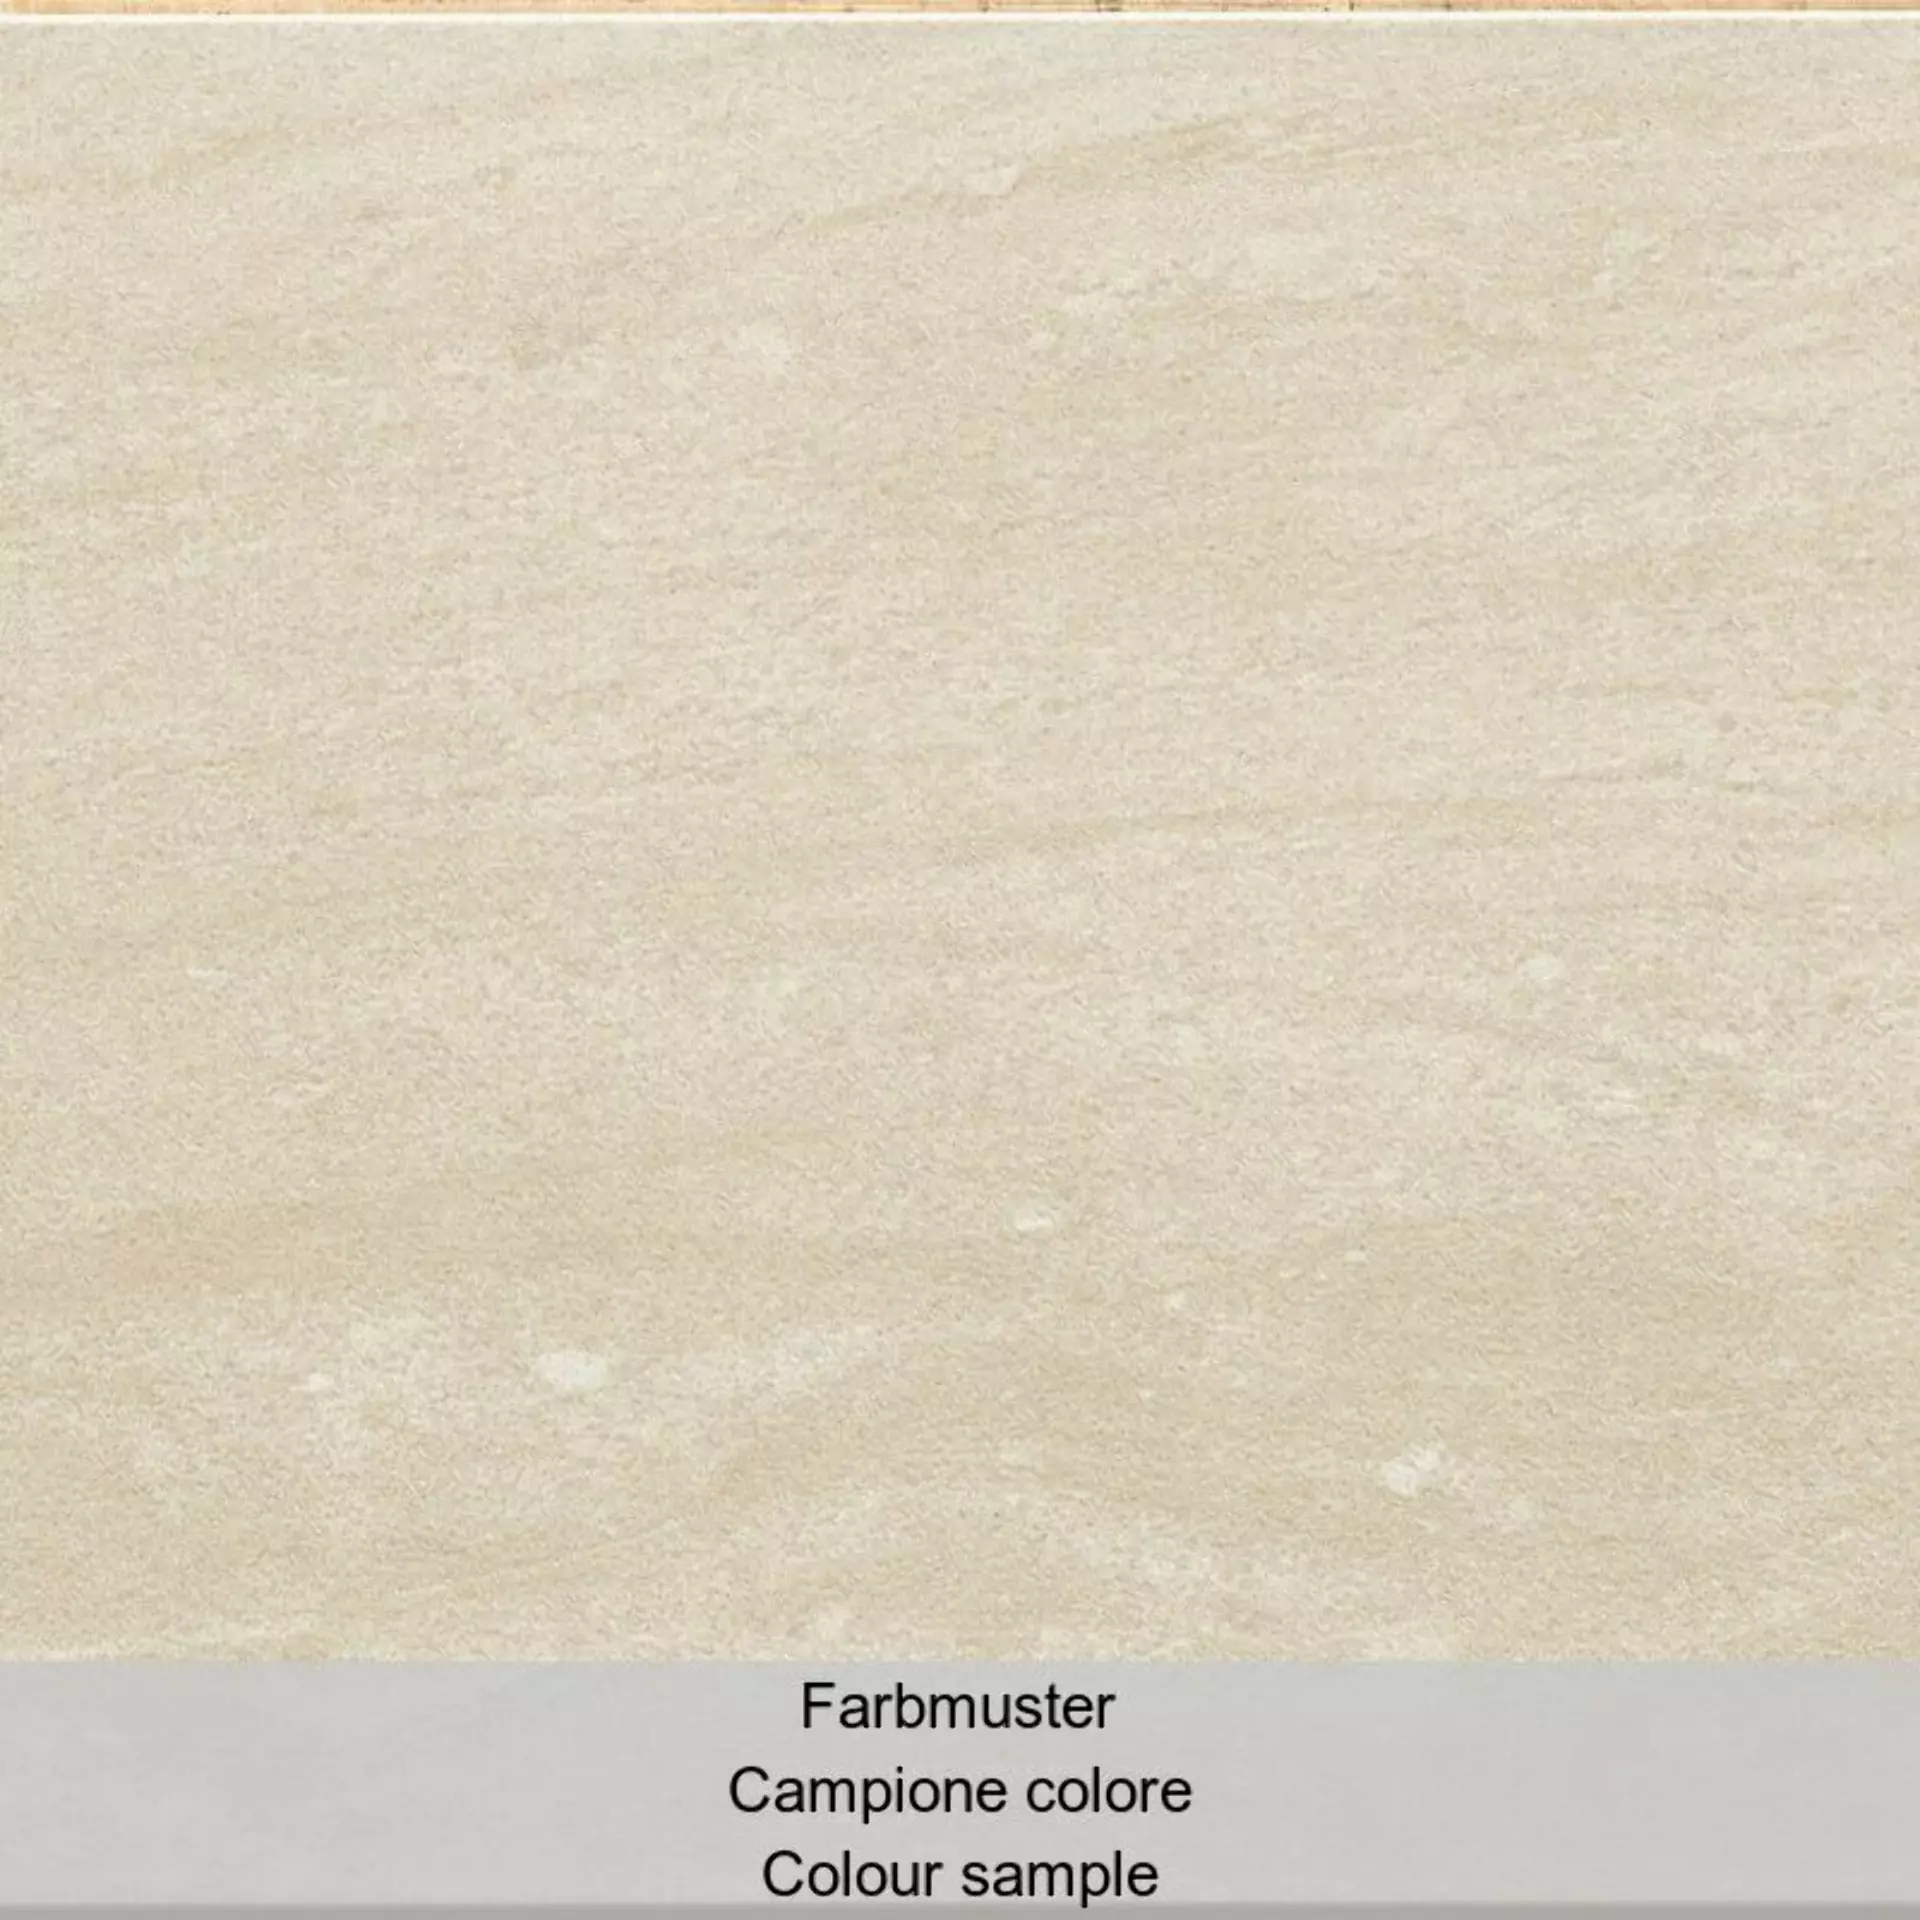 Casalgrande Terre Toscane Verrazzano Naturale – Matt – Antibacterial 4955741 60x60cm rectified 10mm